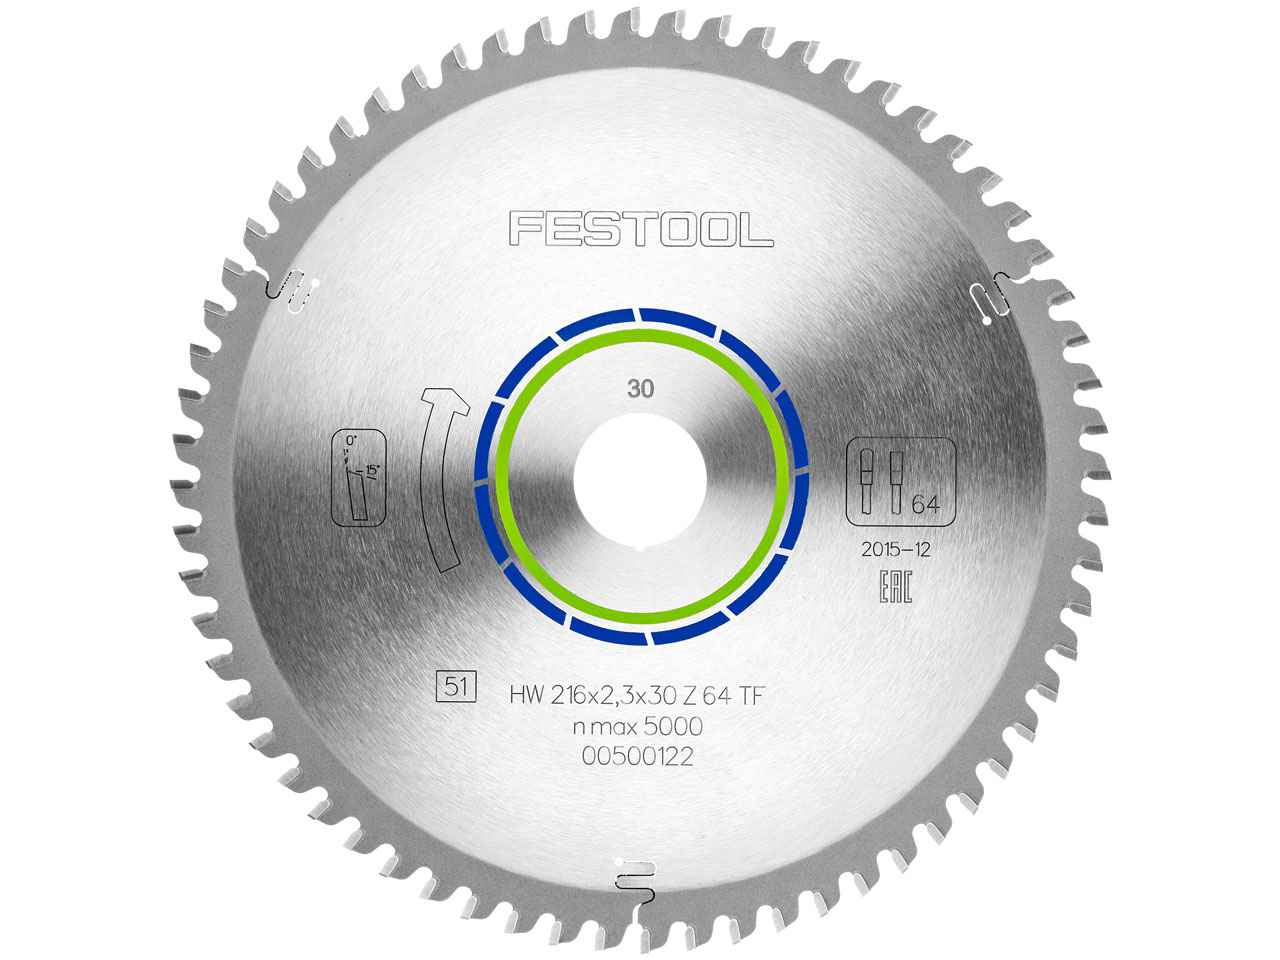 Festool Festool 500122 216mm x 30mm x 64T Aluminium Circular Saw